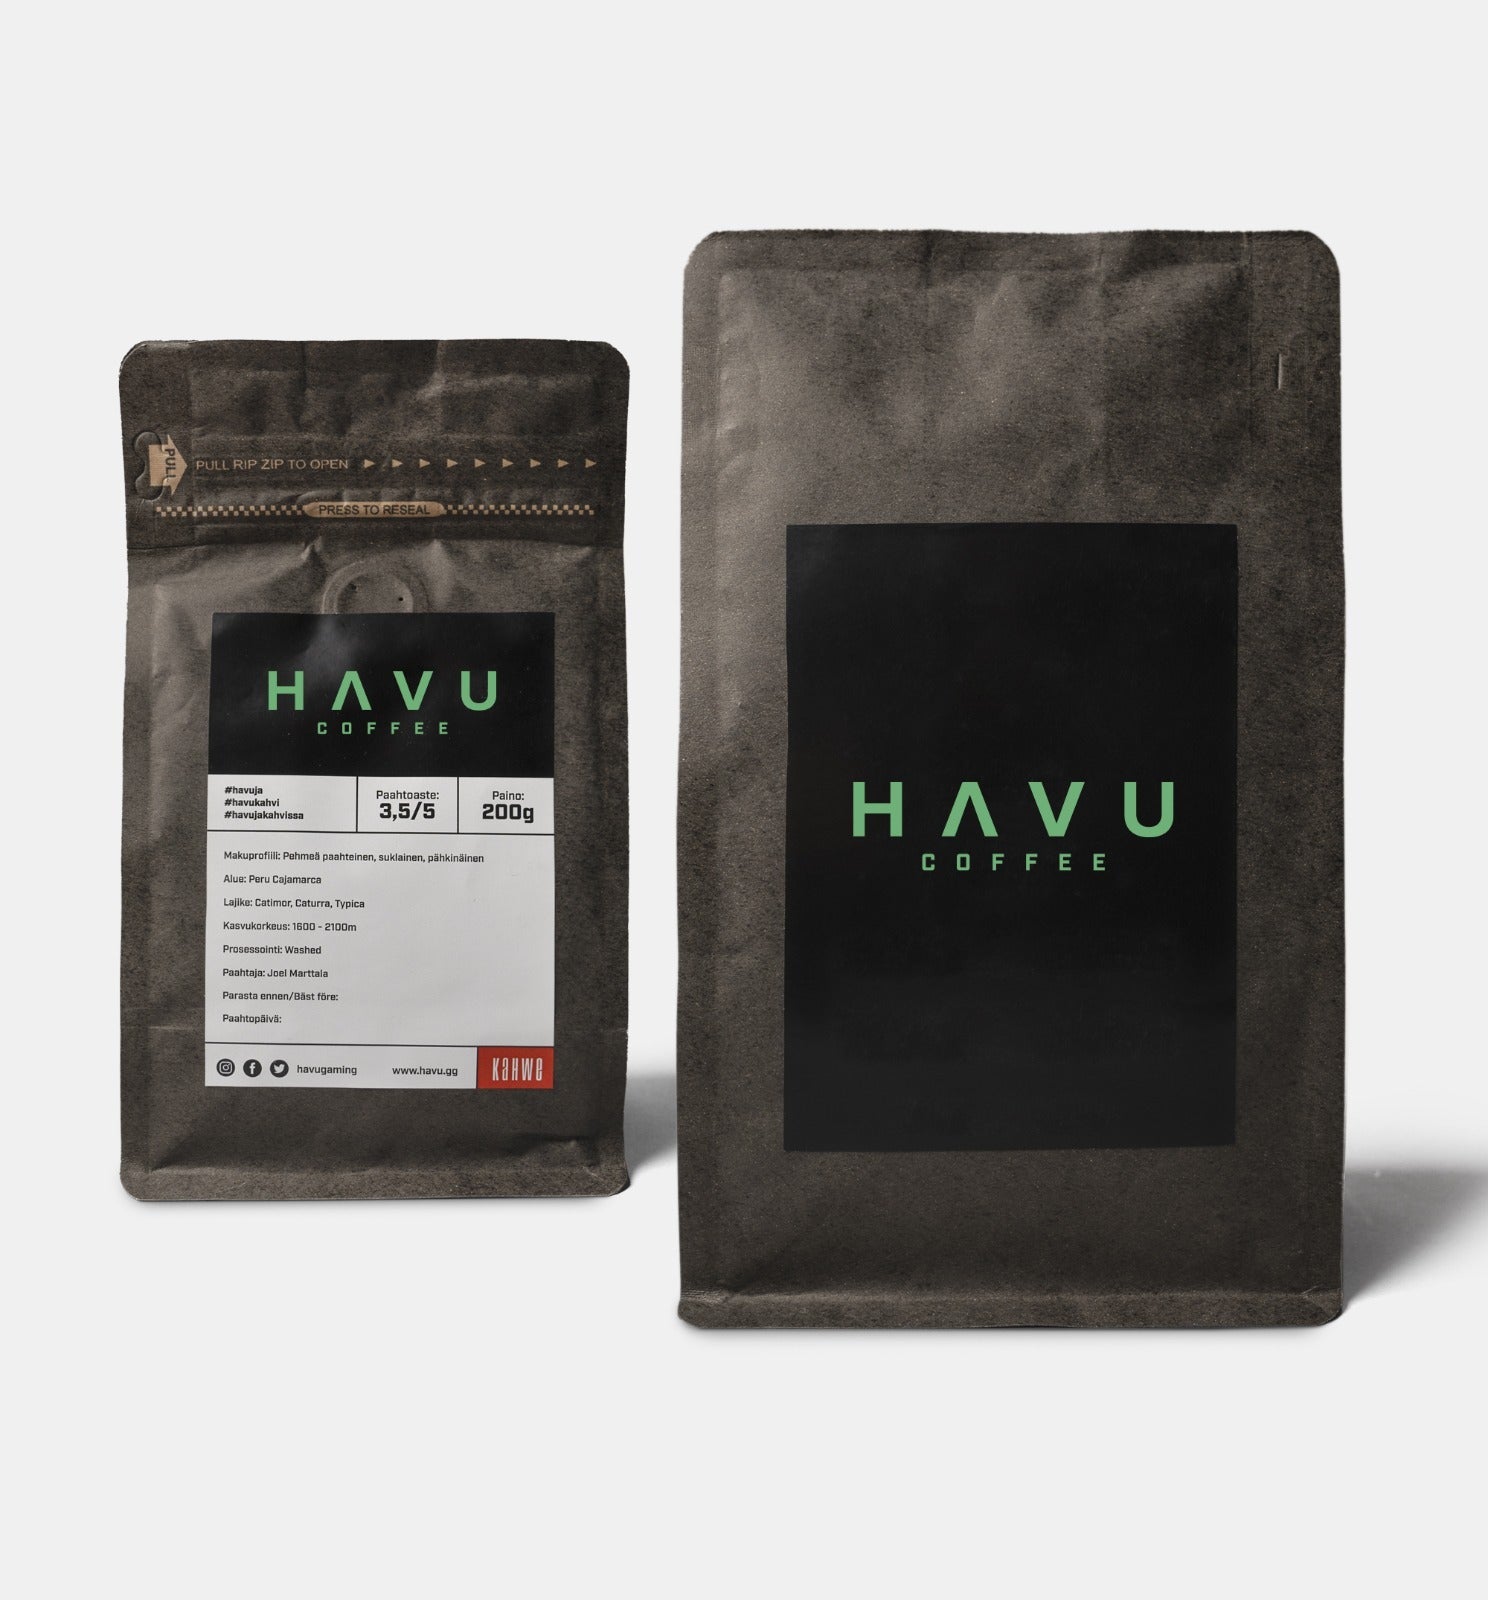 HAVU Kahvi by Kahwe